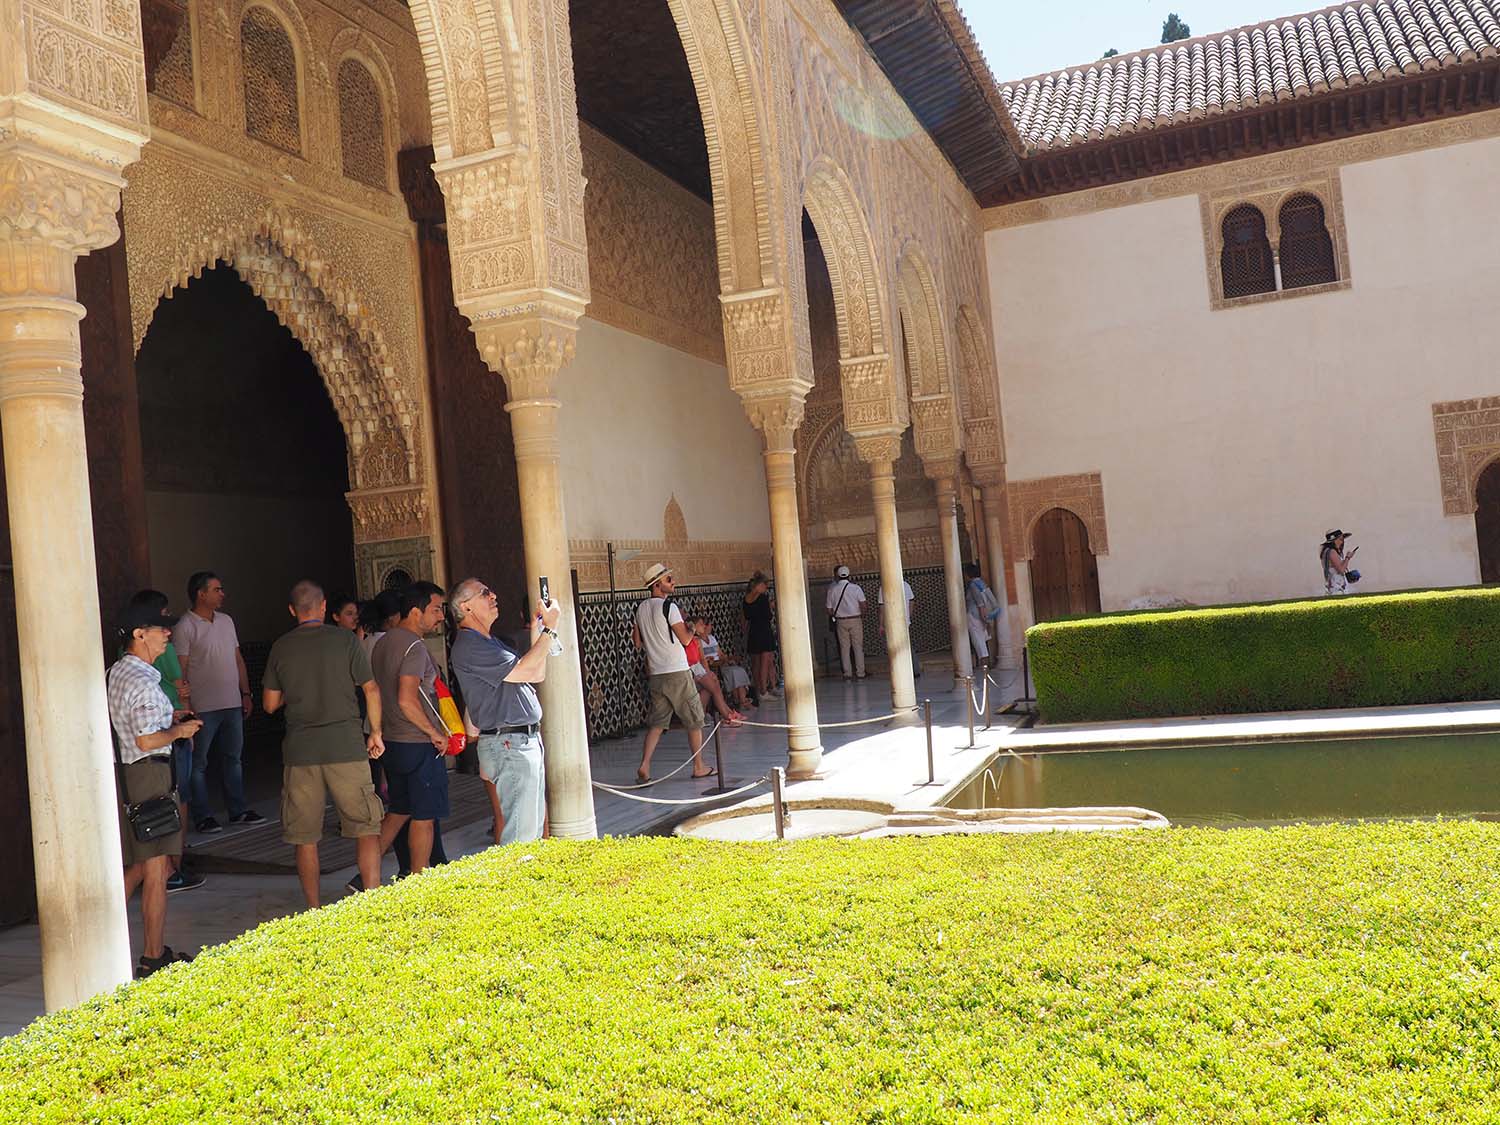 Palacio de Comares southern pavilion portico, Patio de los Arrayanes